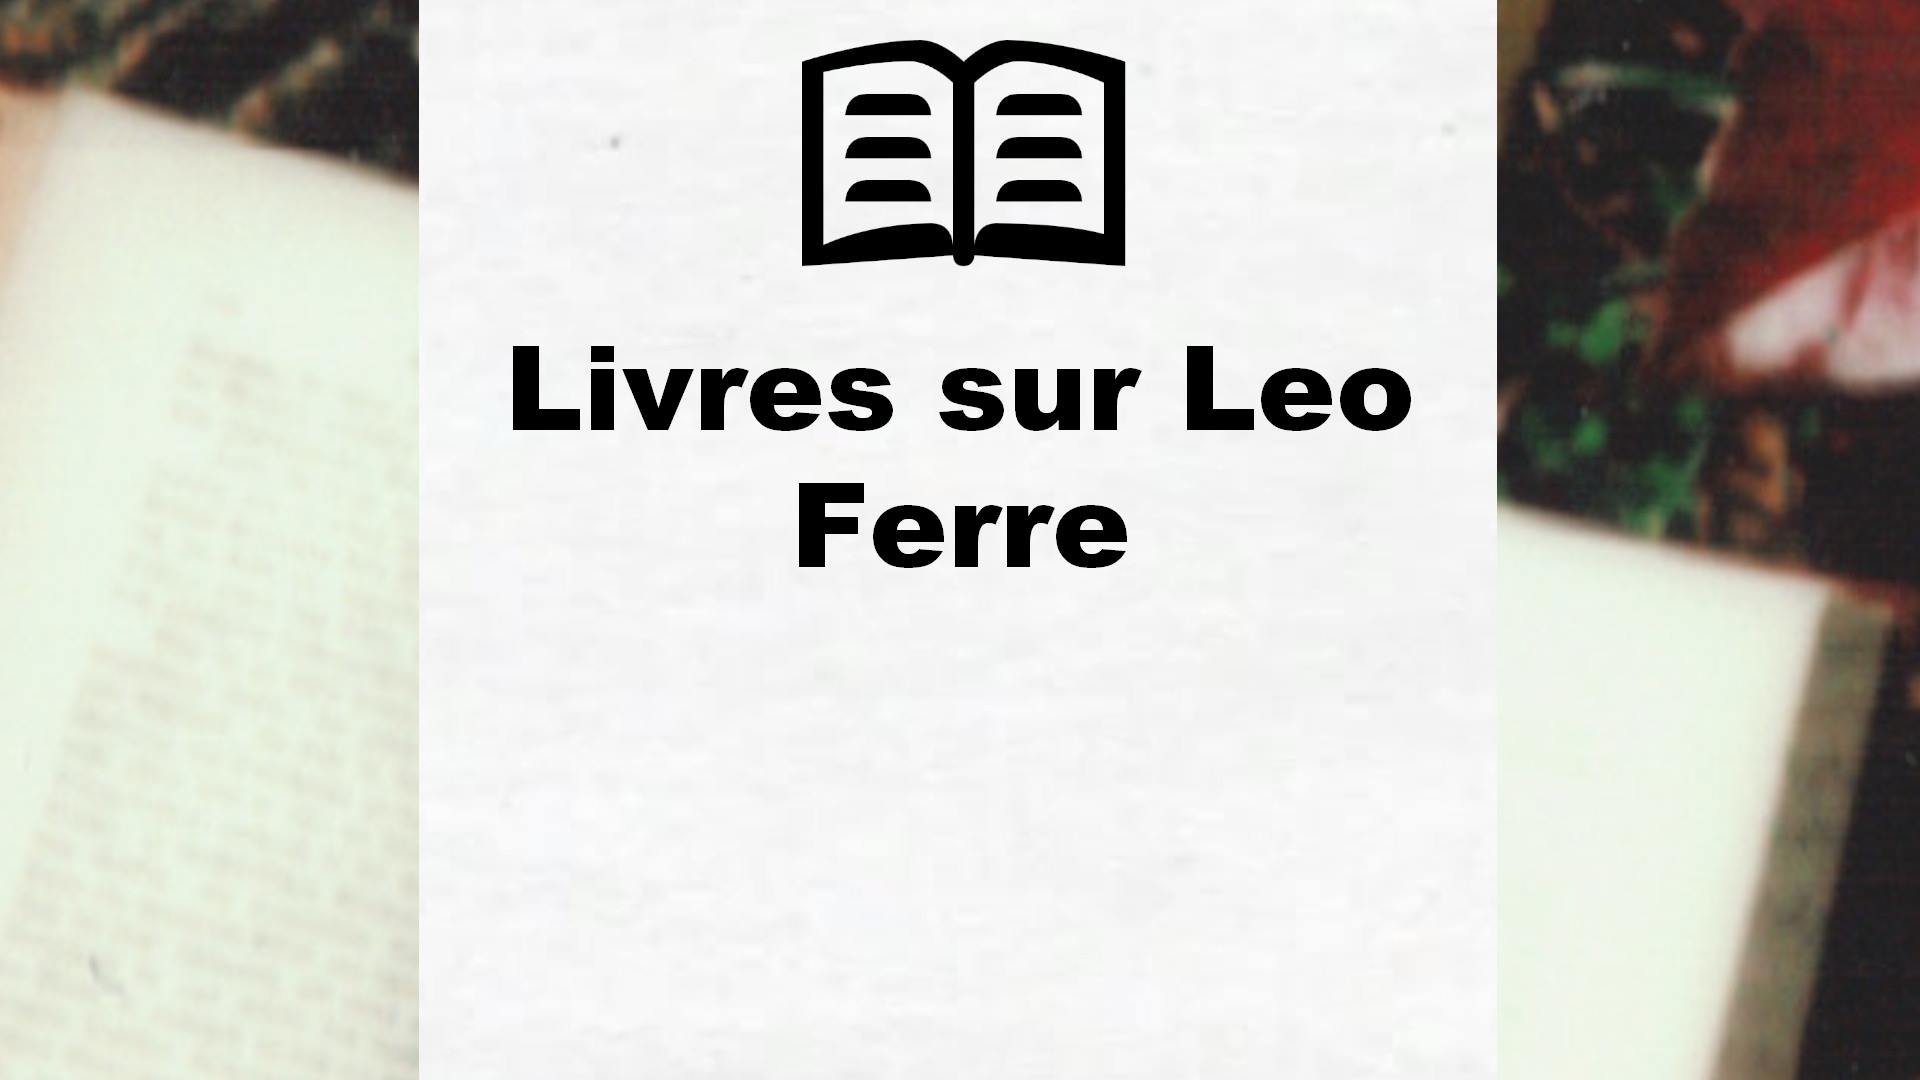 Livres sur Leo Ferre